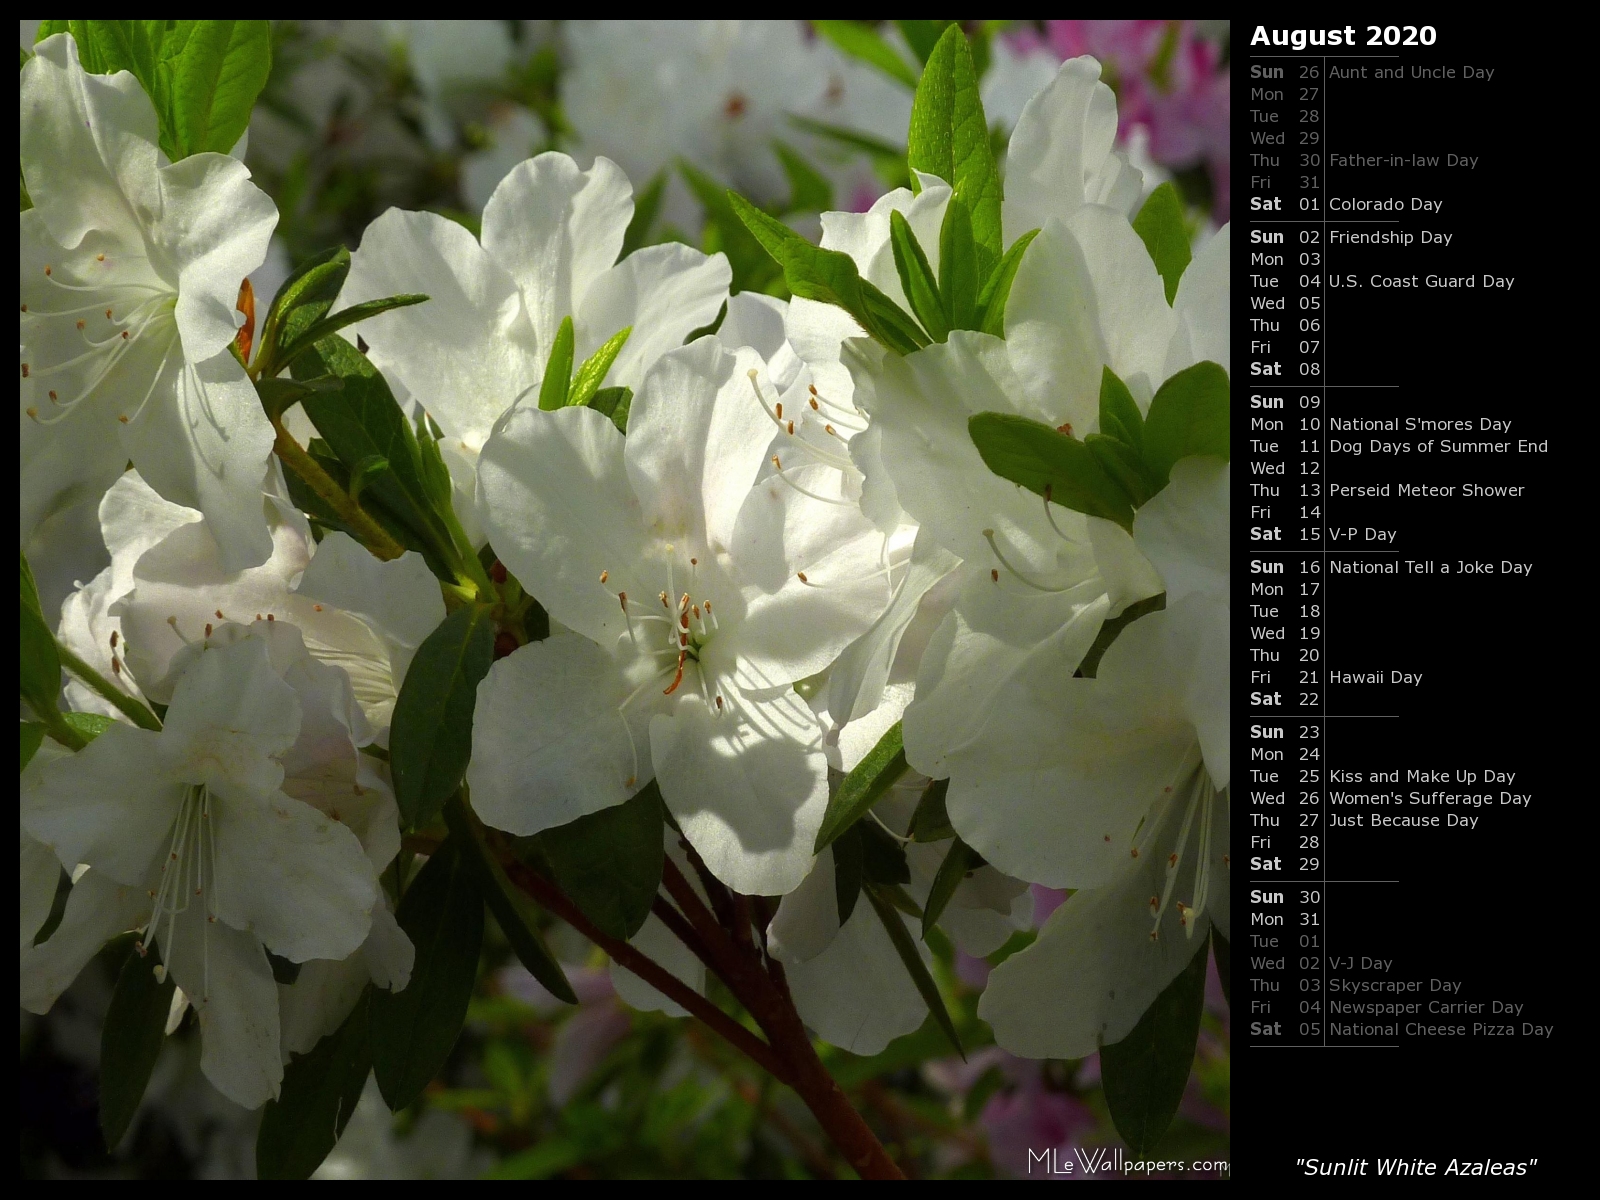 Mlewallpaper Sunlit White Azaleas Calendar